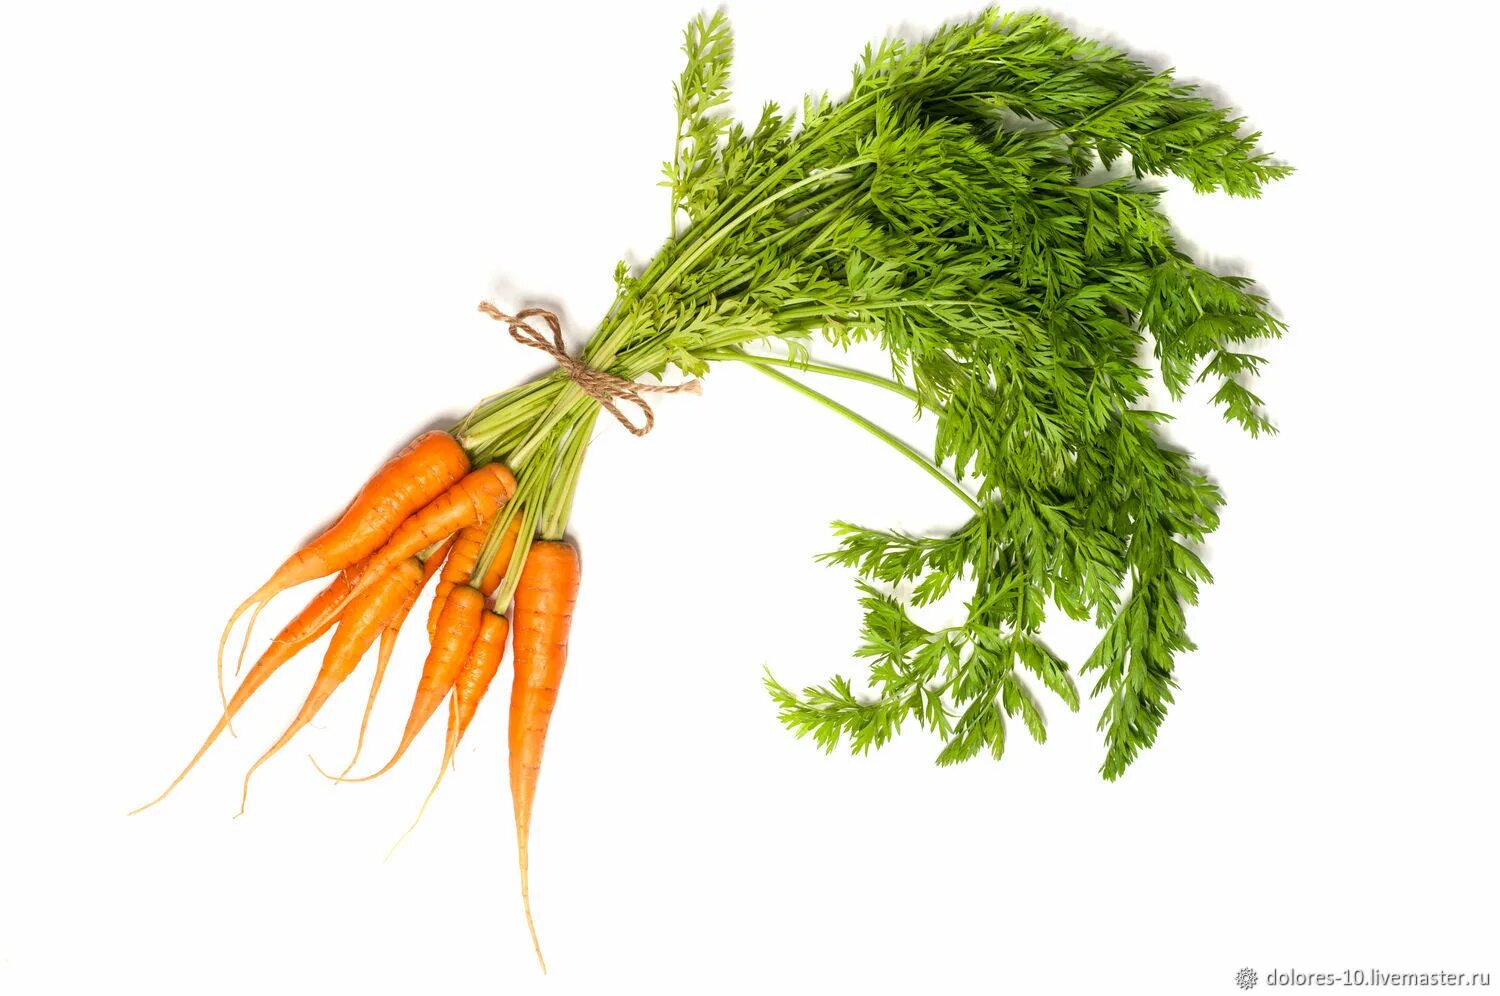 Морковь в пучках. Пучок морковки. Пучок морковки на белом фоне. Морковь на прозрачном фоне. Свяжи морковки в пучки